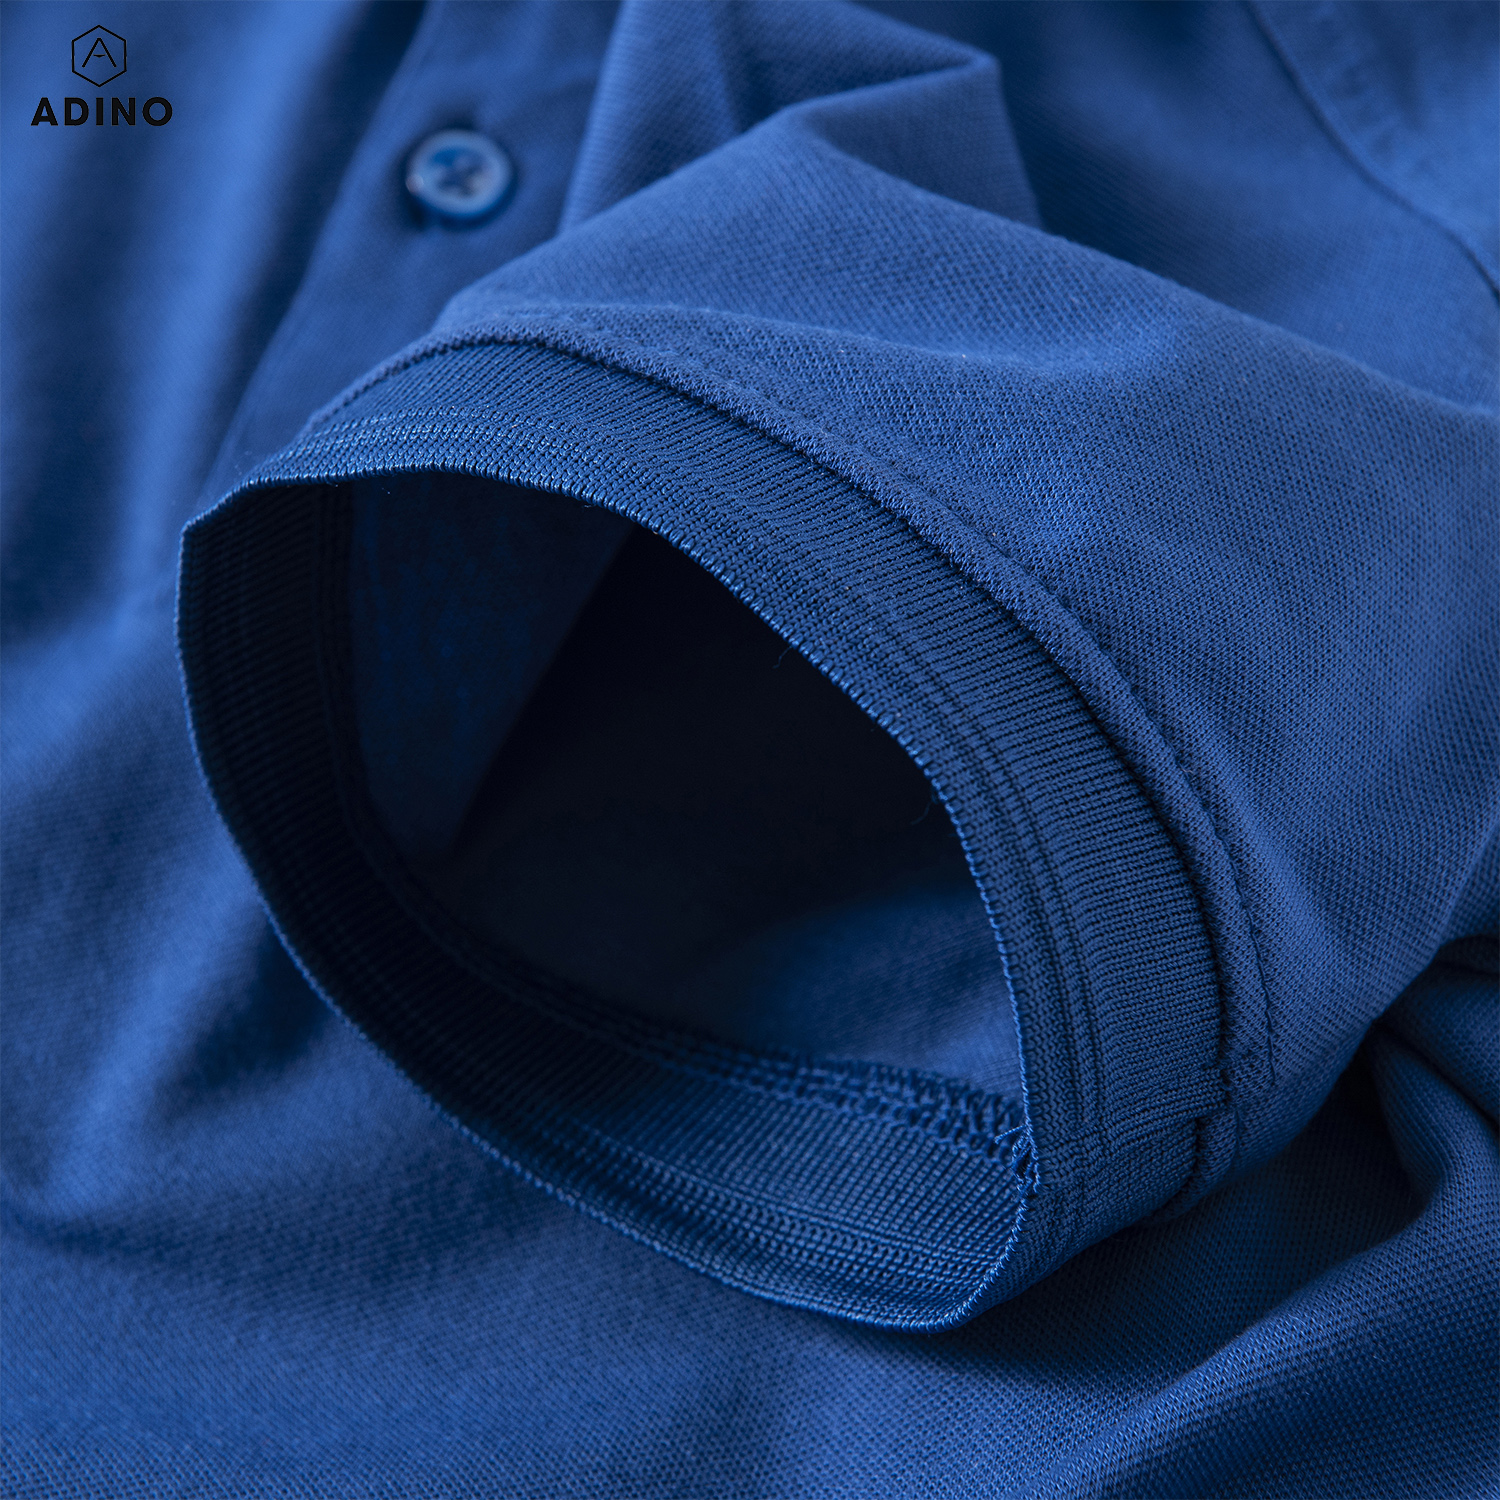 Áo polo nữ màu xanh bích đậm phối viền chìm ADINO vải cotton polyester mềm dáng slimfit công sở hơi ôm trẻ trung APN03